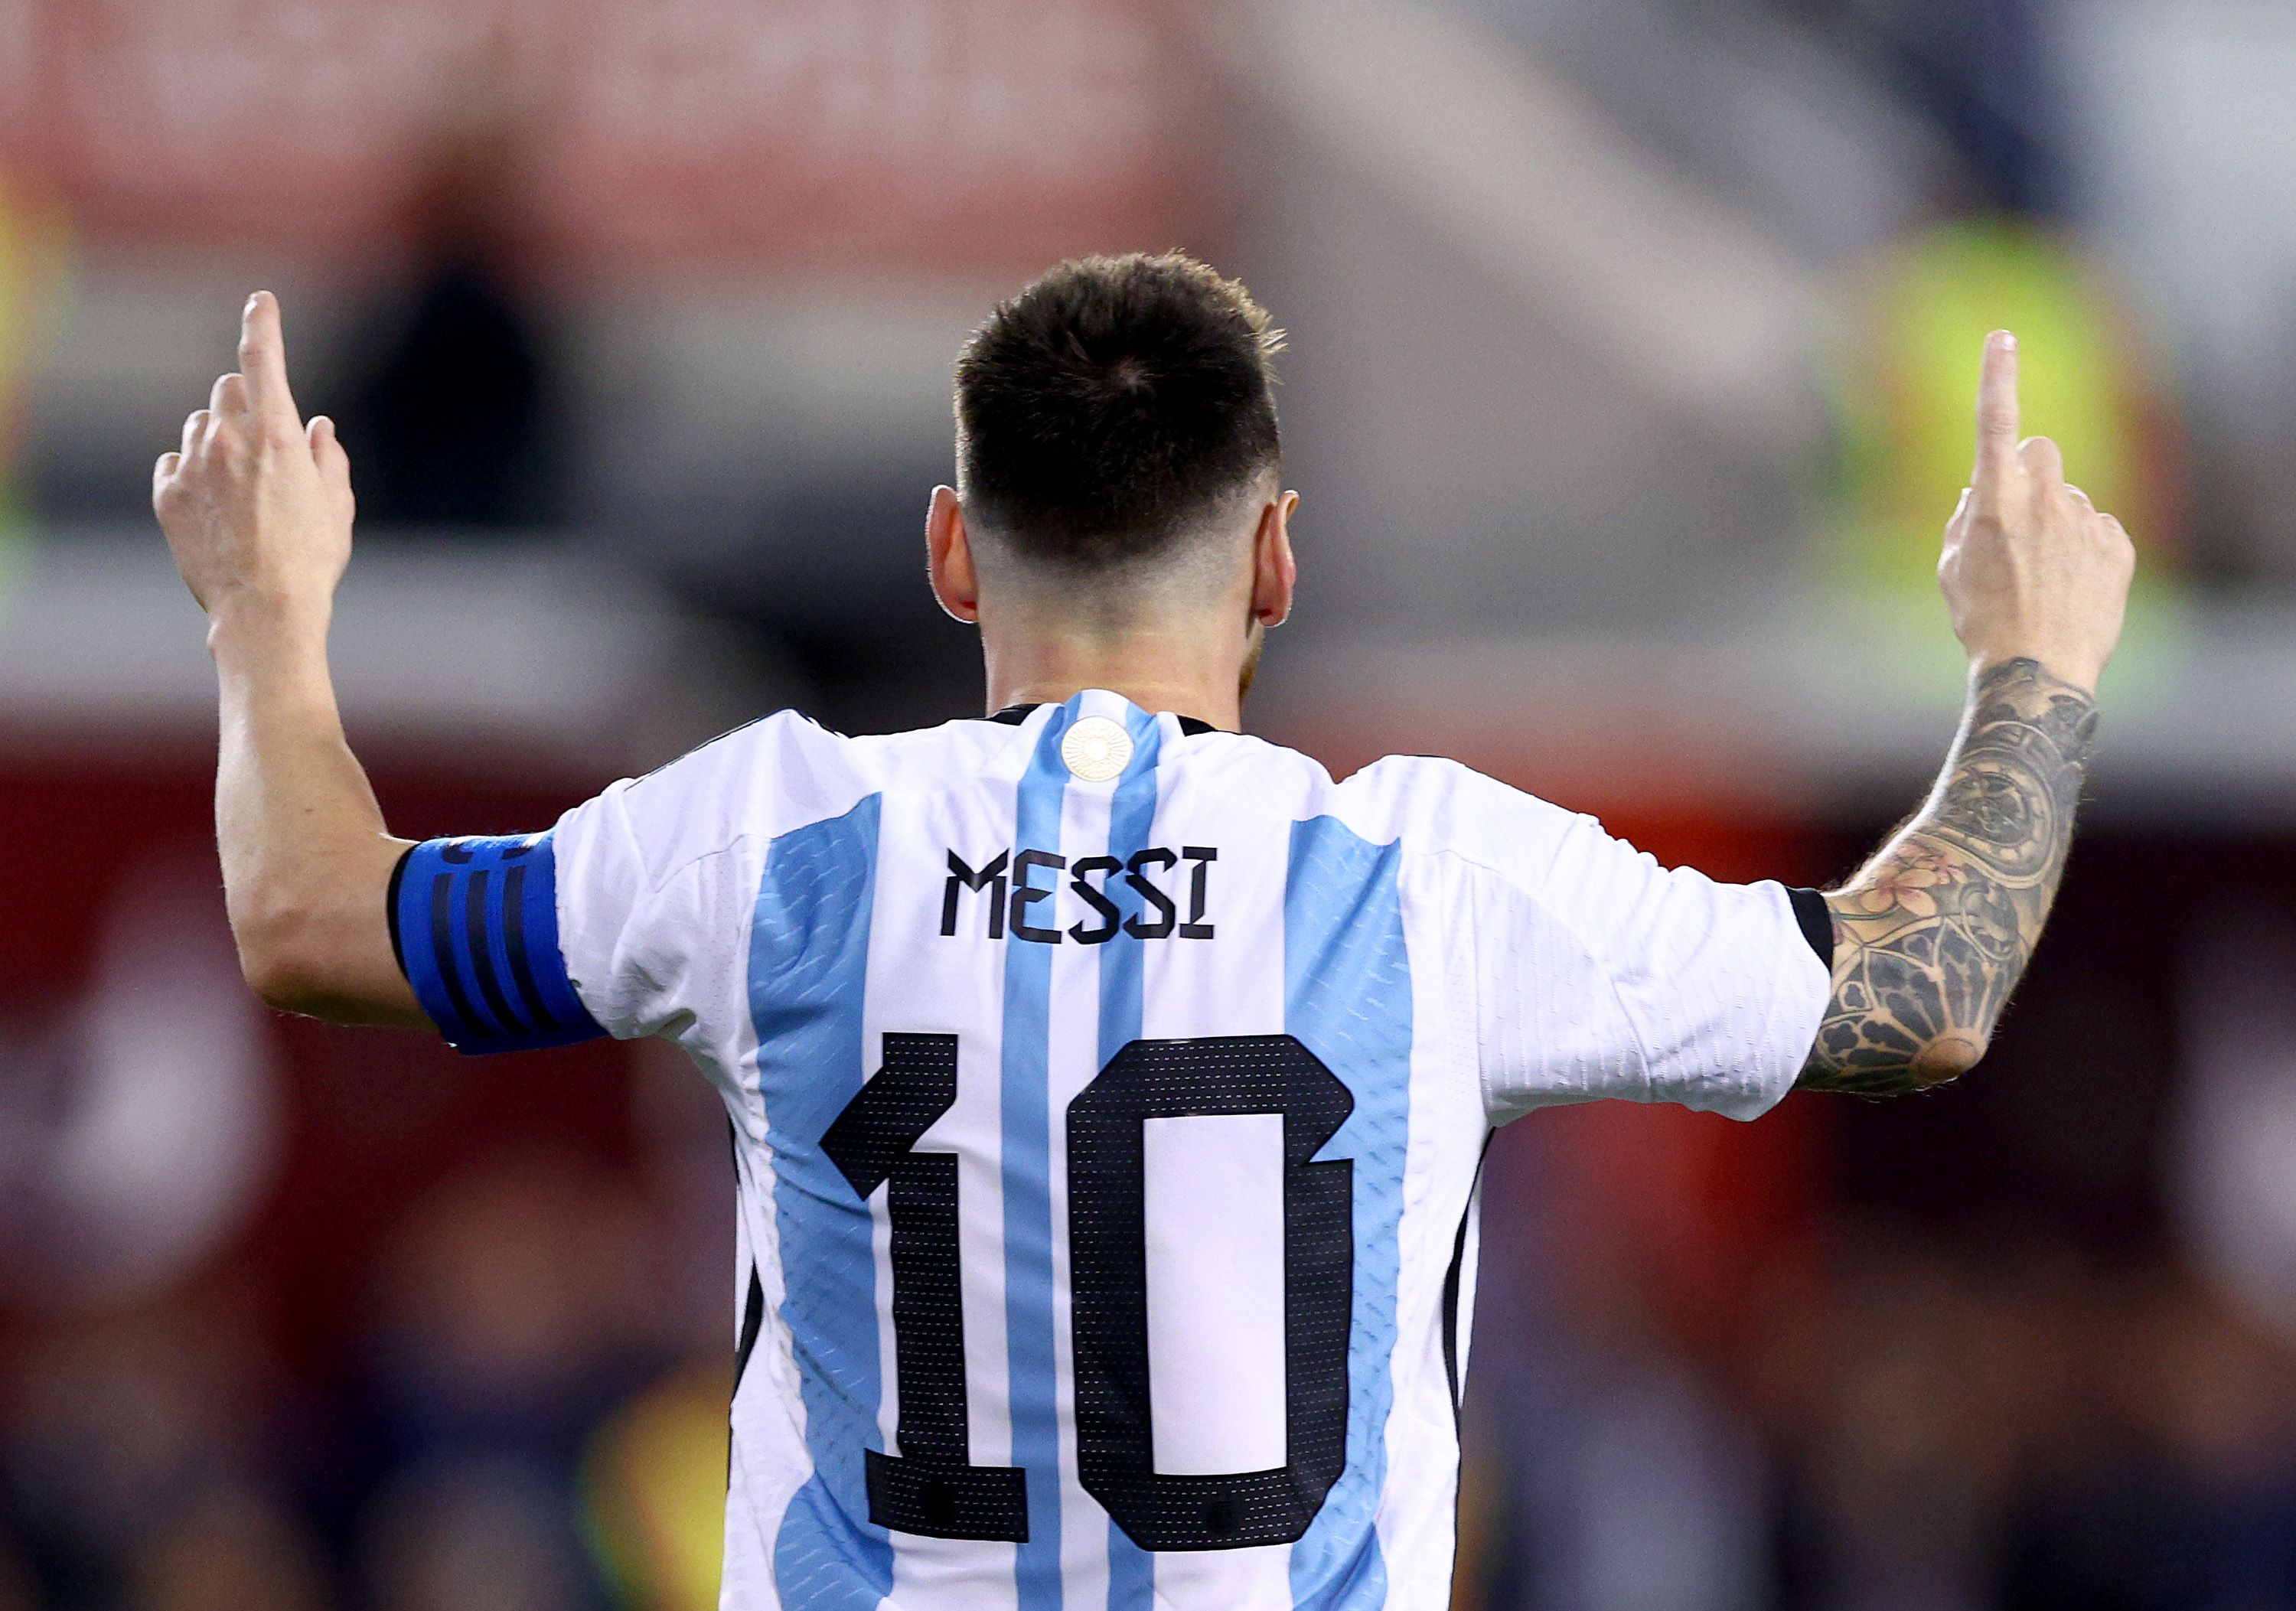 Messi celebrates scoring for Argentina